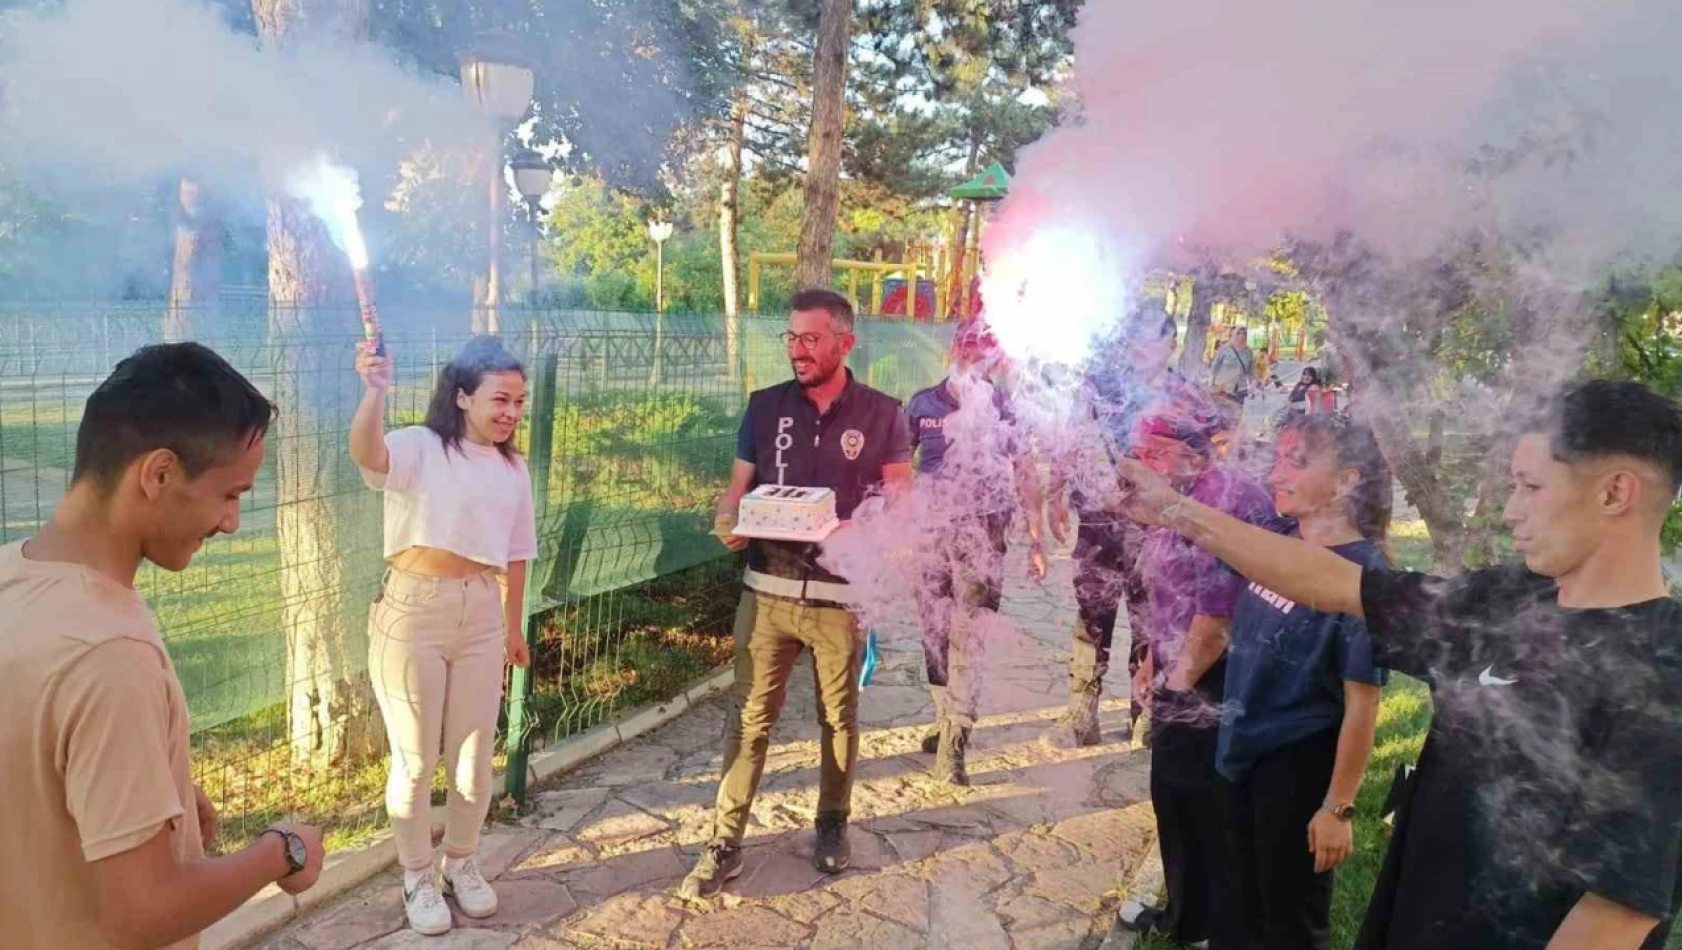 Kas hastası Murat'a çok sevdiği polislerden doğumgünü sürprizi